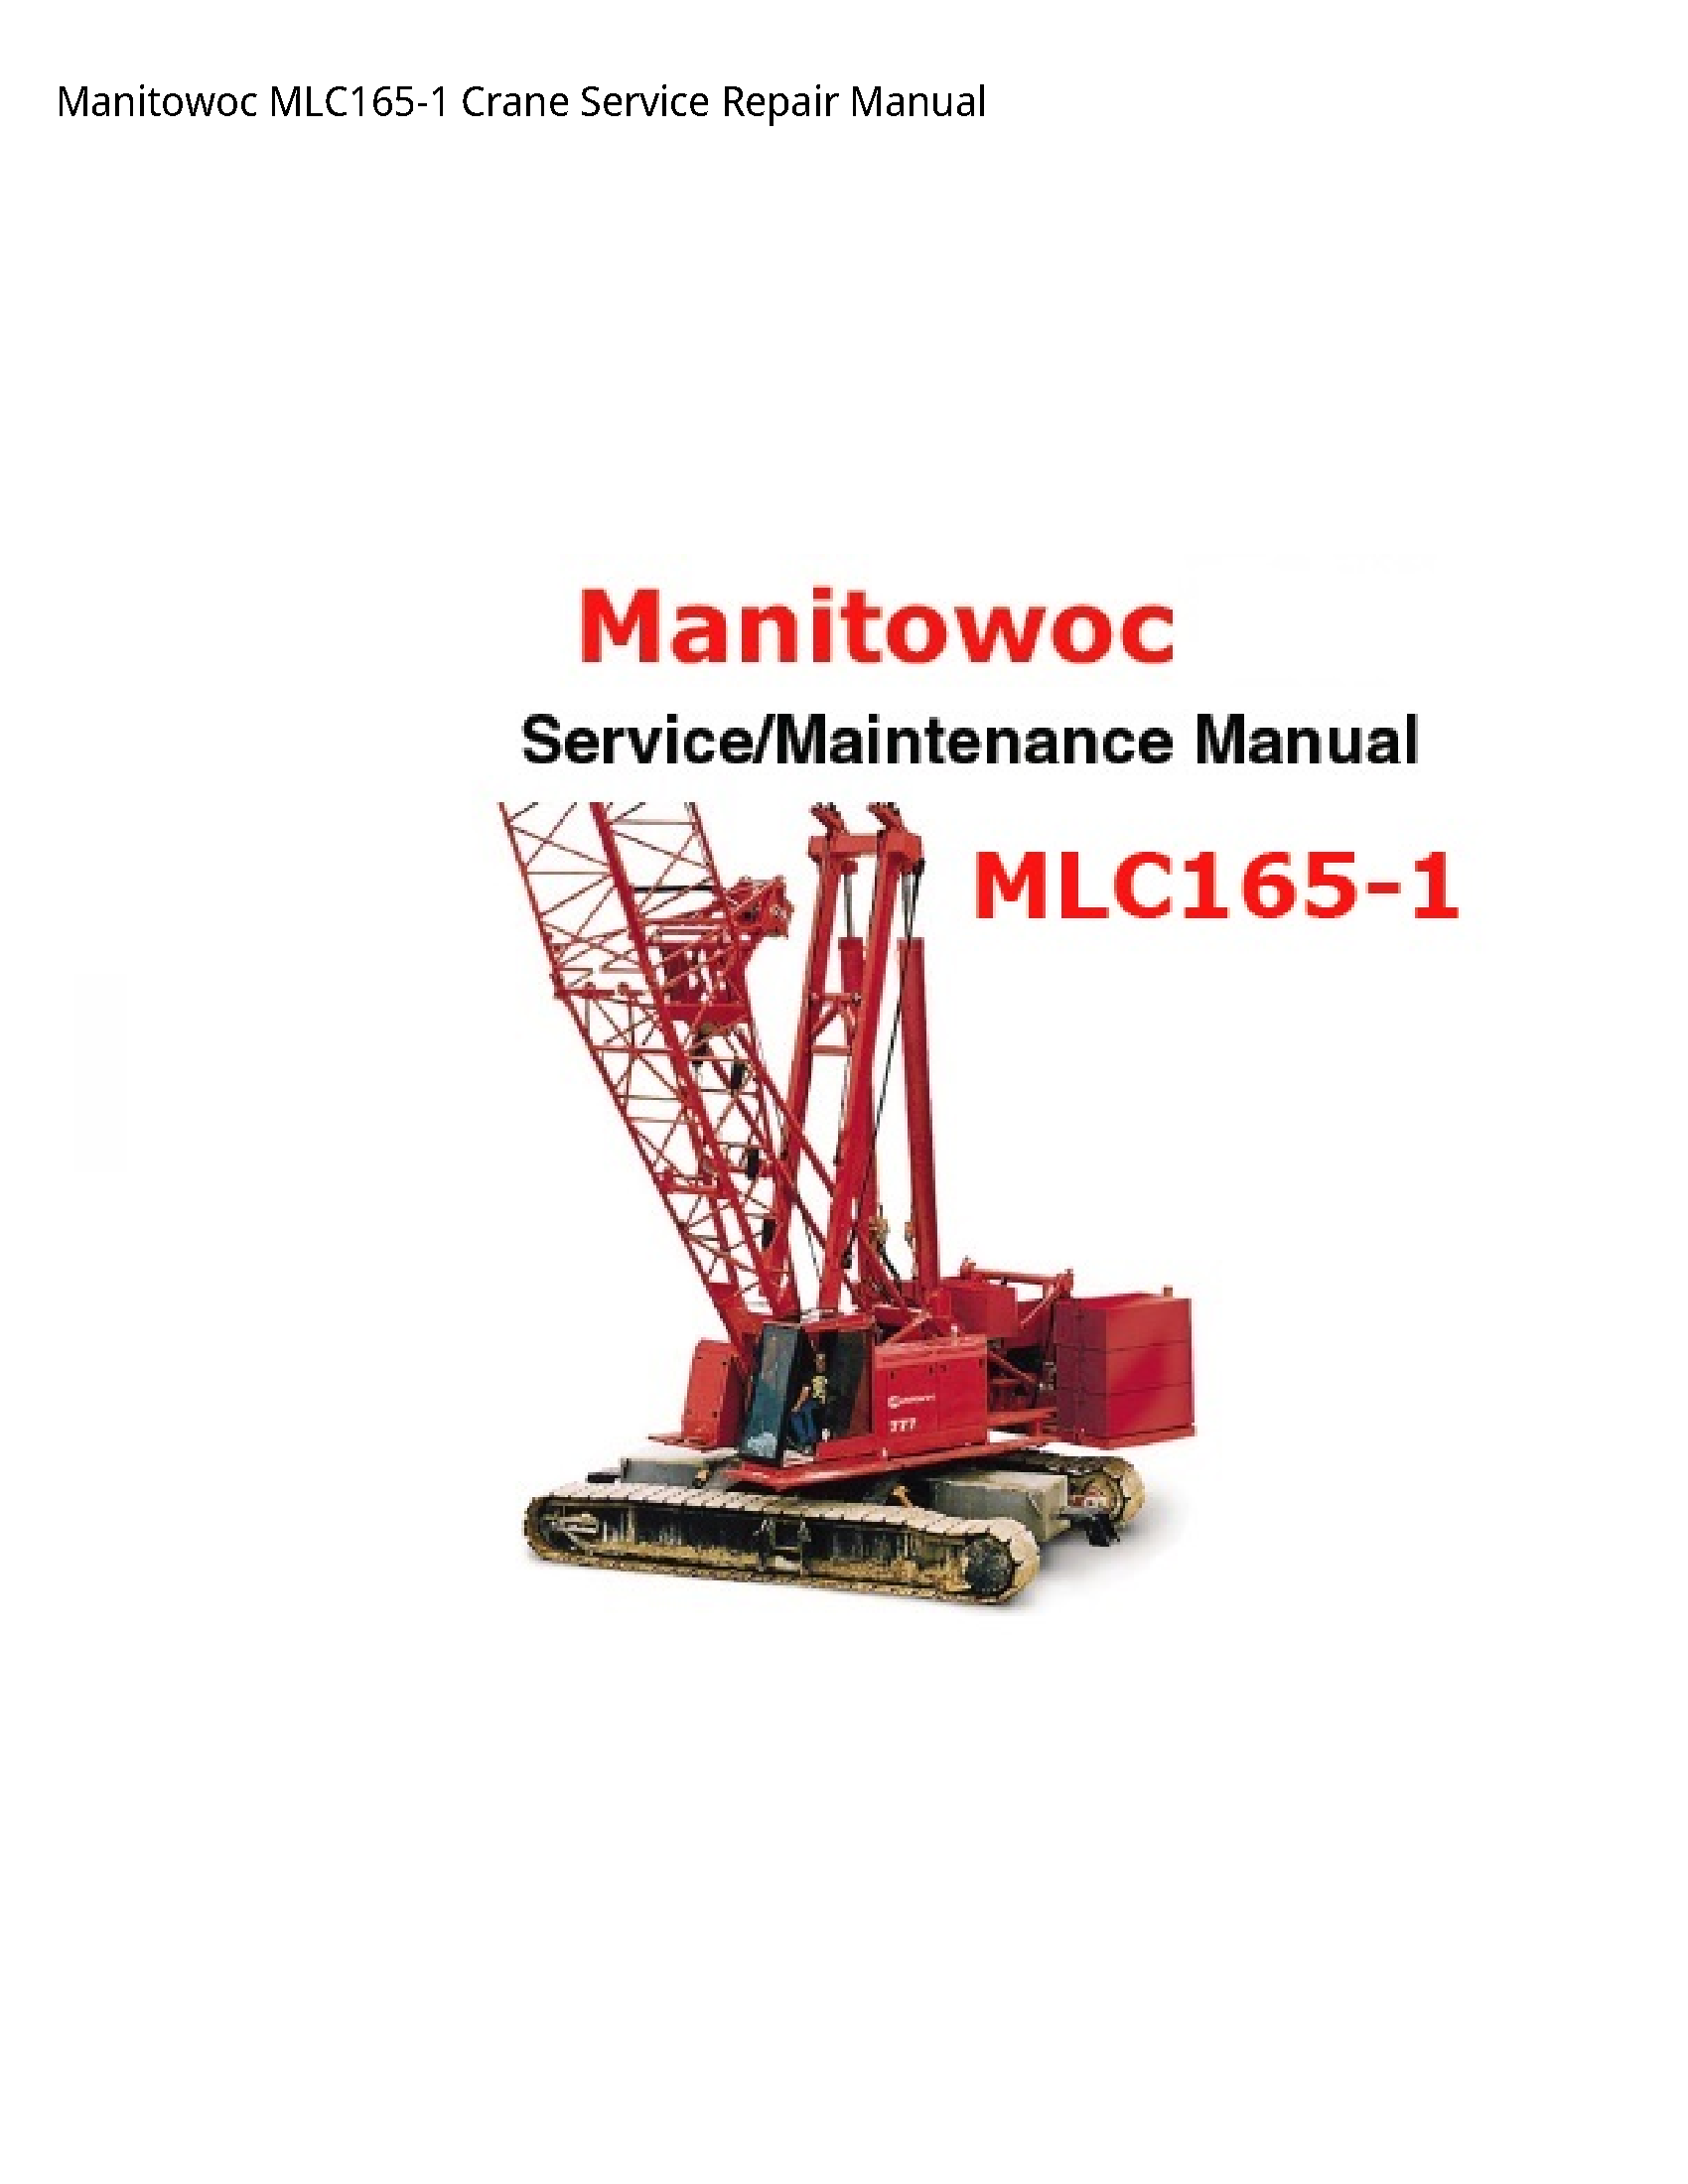 Manitowoc MLC165-1 Crane manual